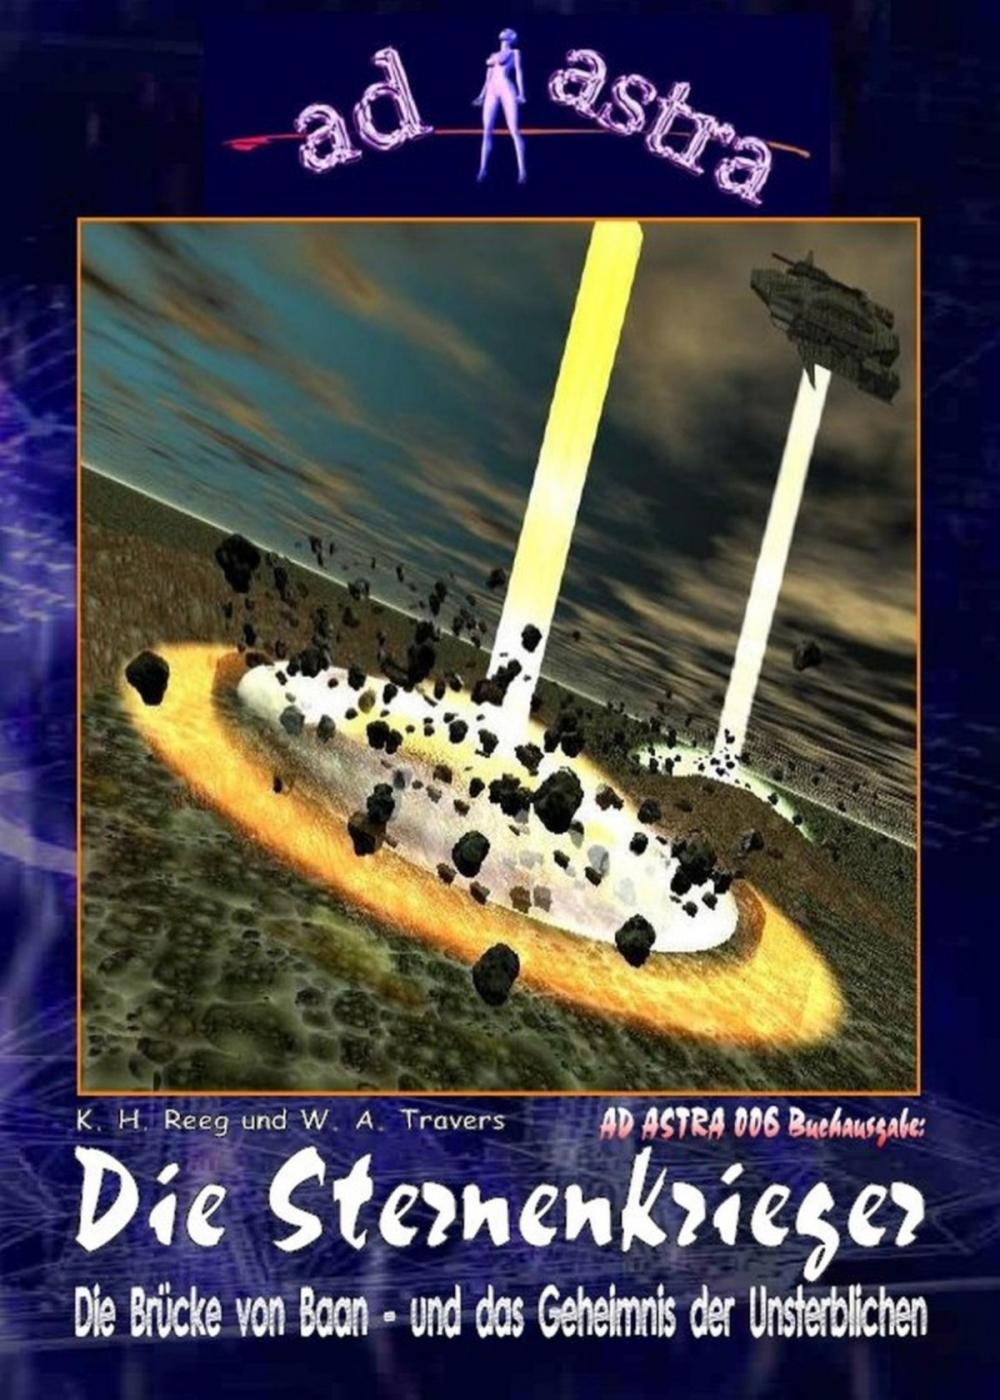 Big bigCover of AD ASTRA 006 Buchausgabe: Die Sternenkrieger